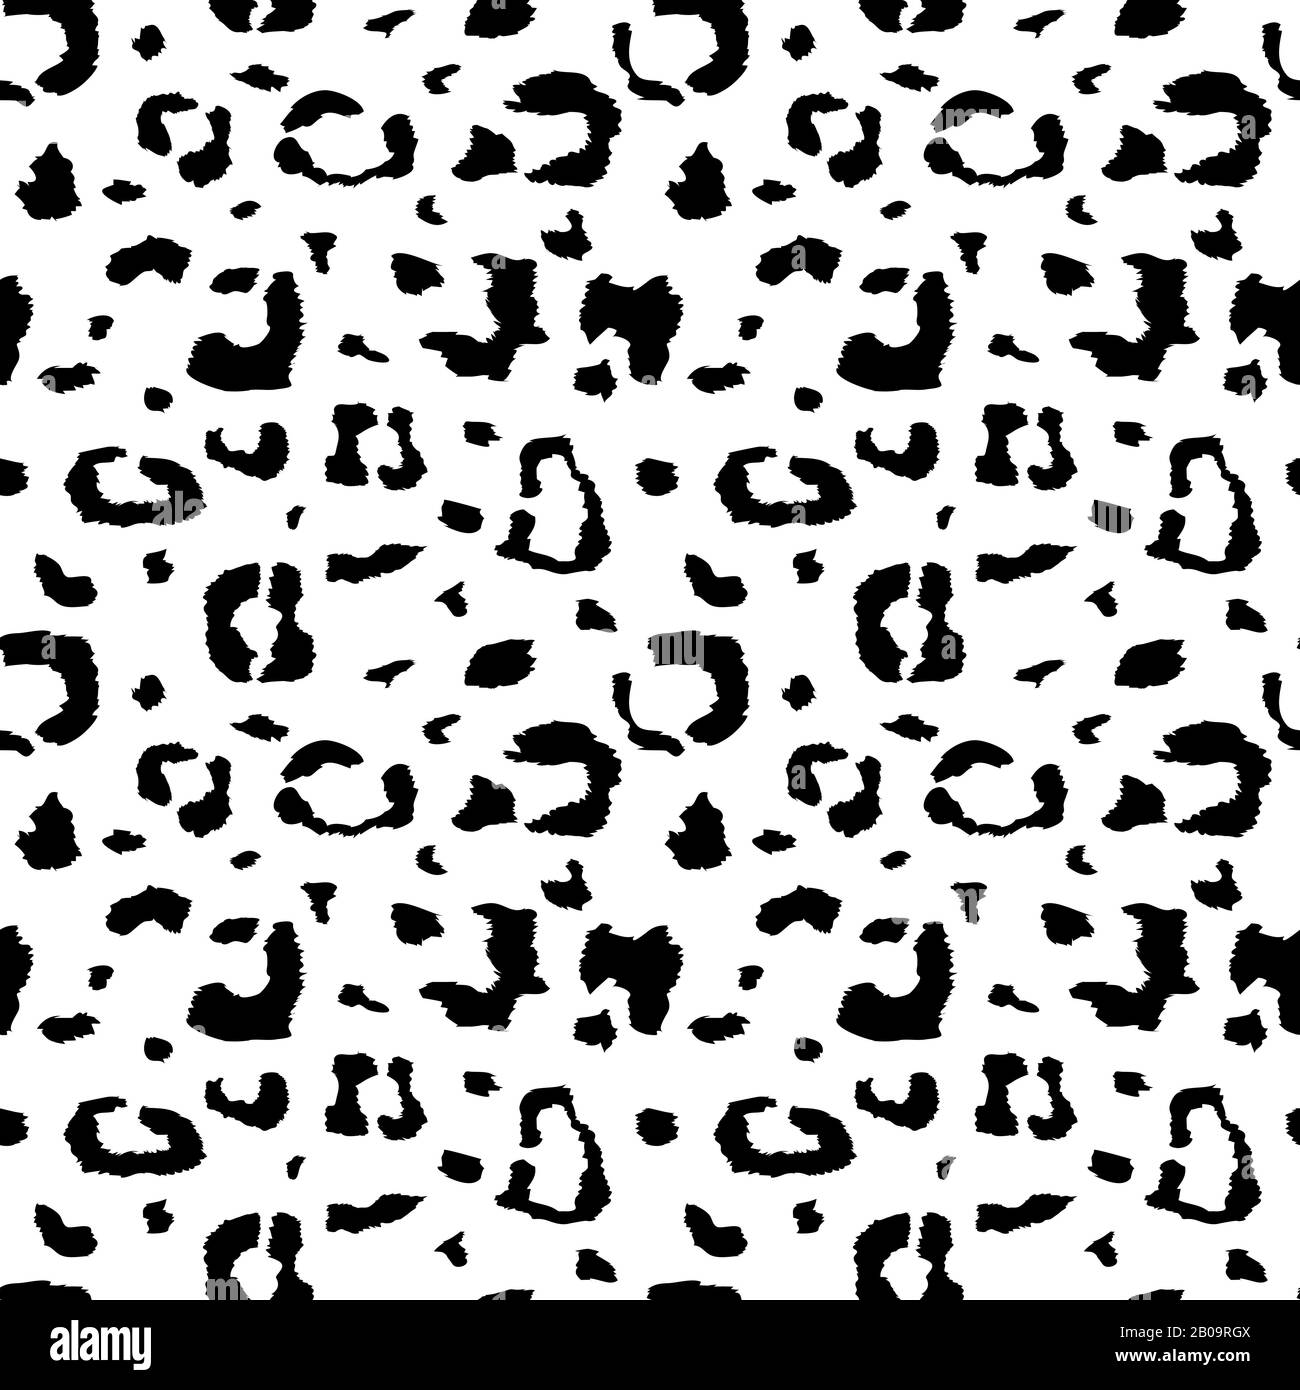 Wilder Leopardenhautvektor schwarz-weiß, nahtloses Muster für afrika-style-Stoff, Safari-Dekoration. Illustration von modischen Leopardenmustern, schwarzem Punkt oder Spritzpattenmuster Stock Vektor